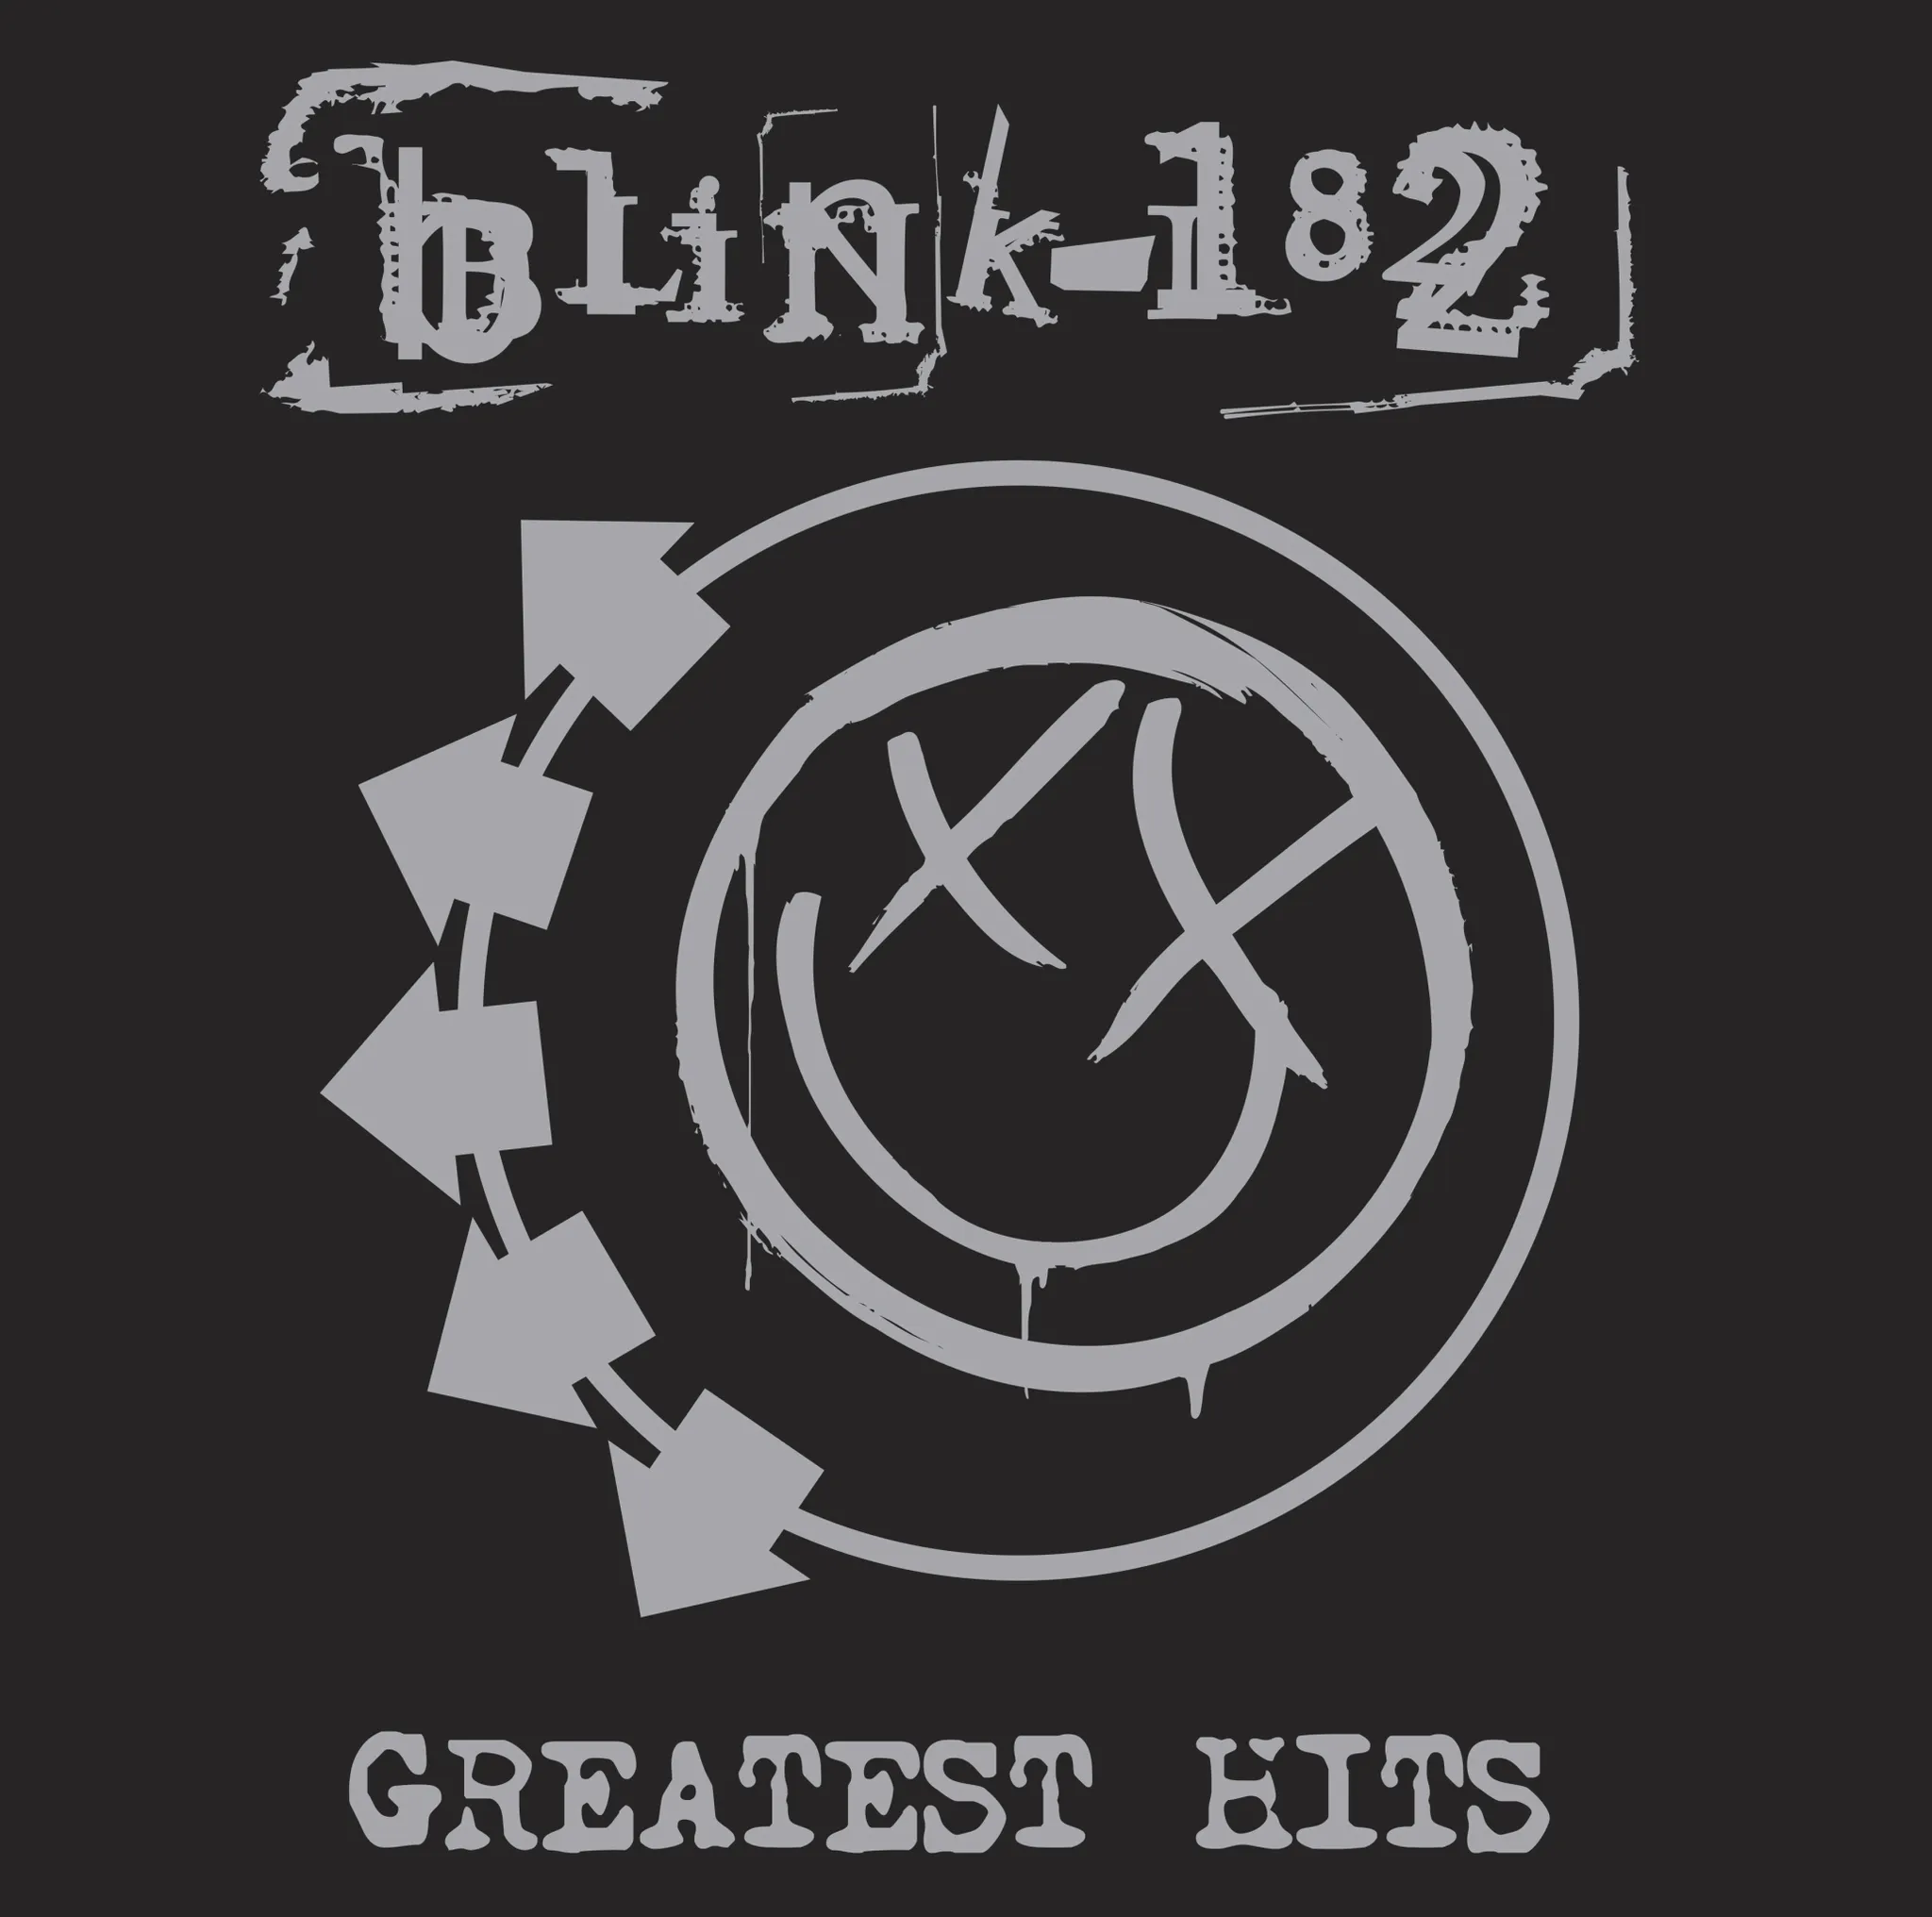 Blink 182 - Greatest Hits artwork